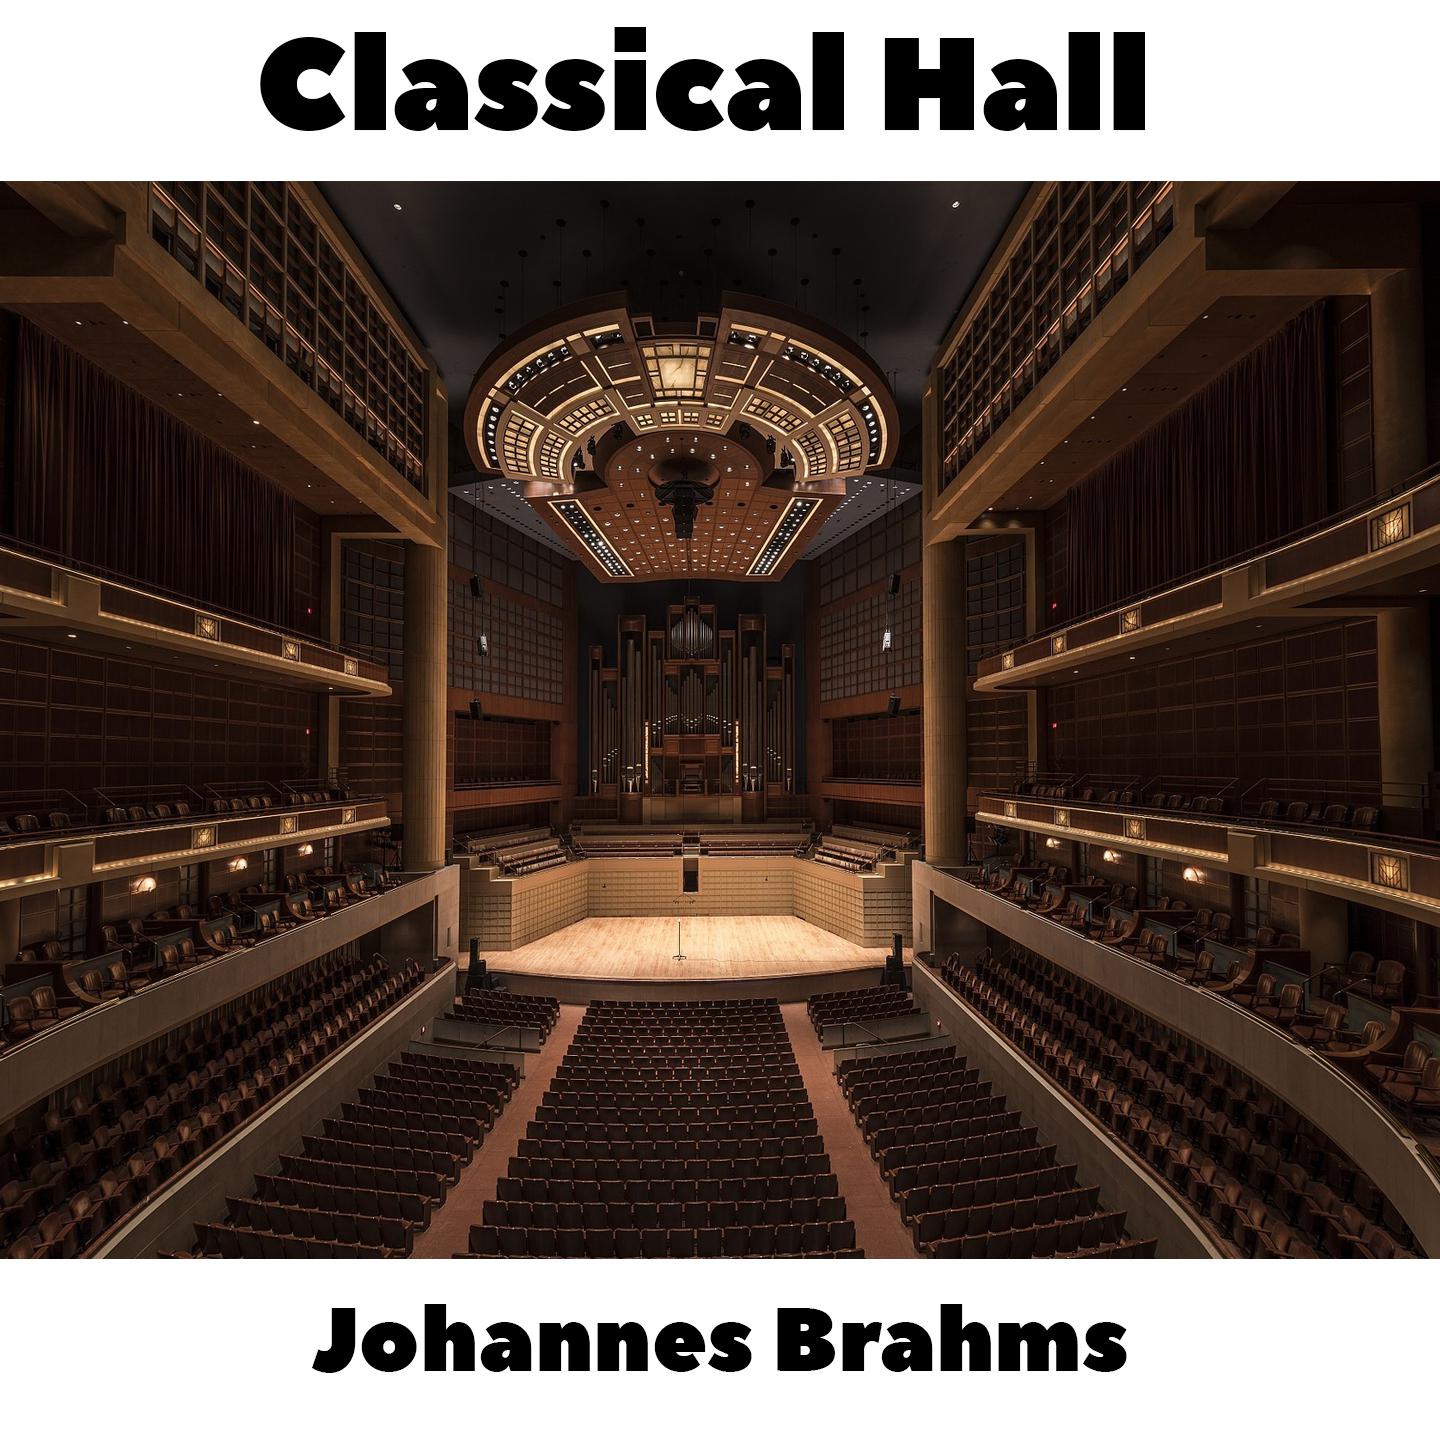 Johannes Brahms -  16 Waltzes, Op.39 - No.10 in G